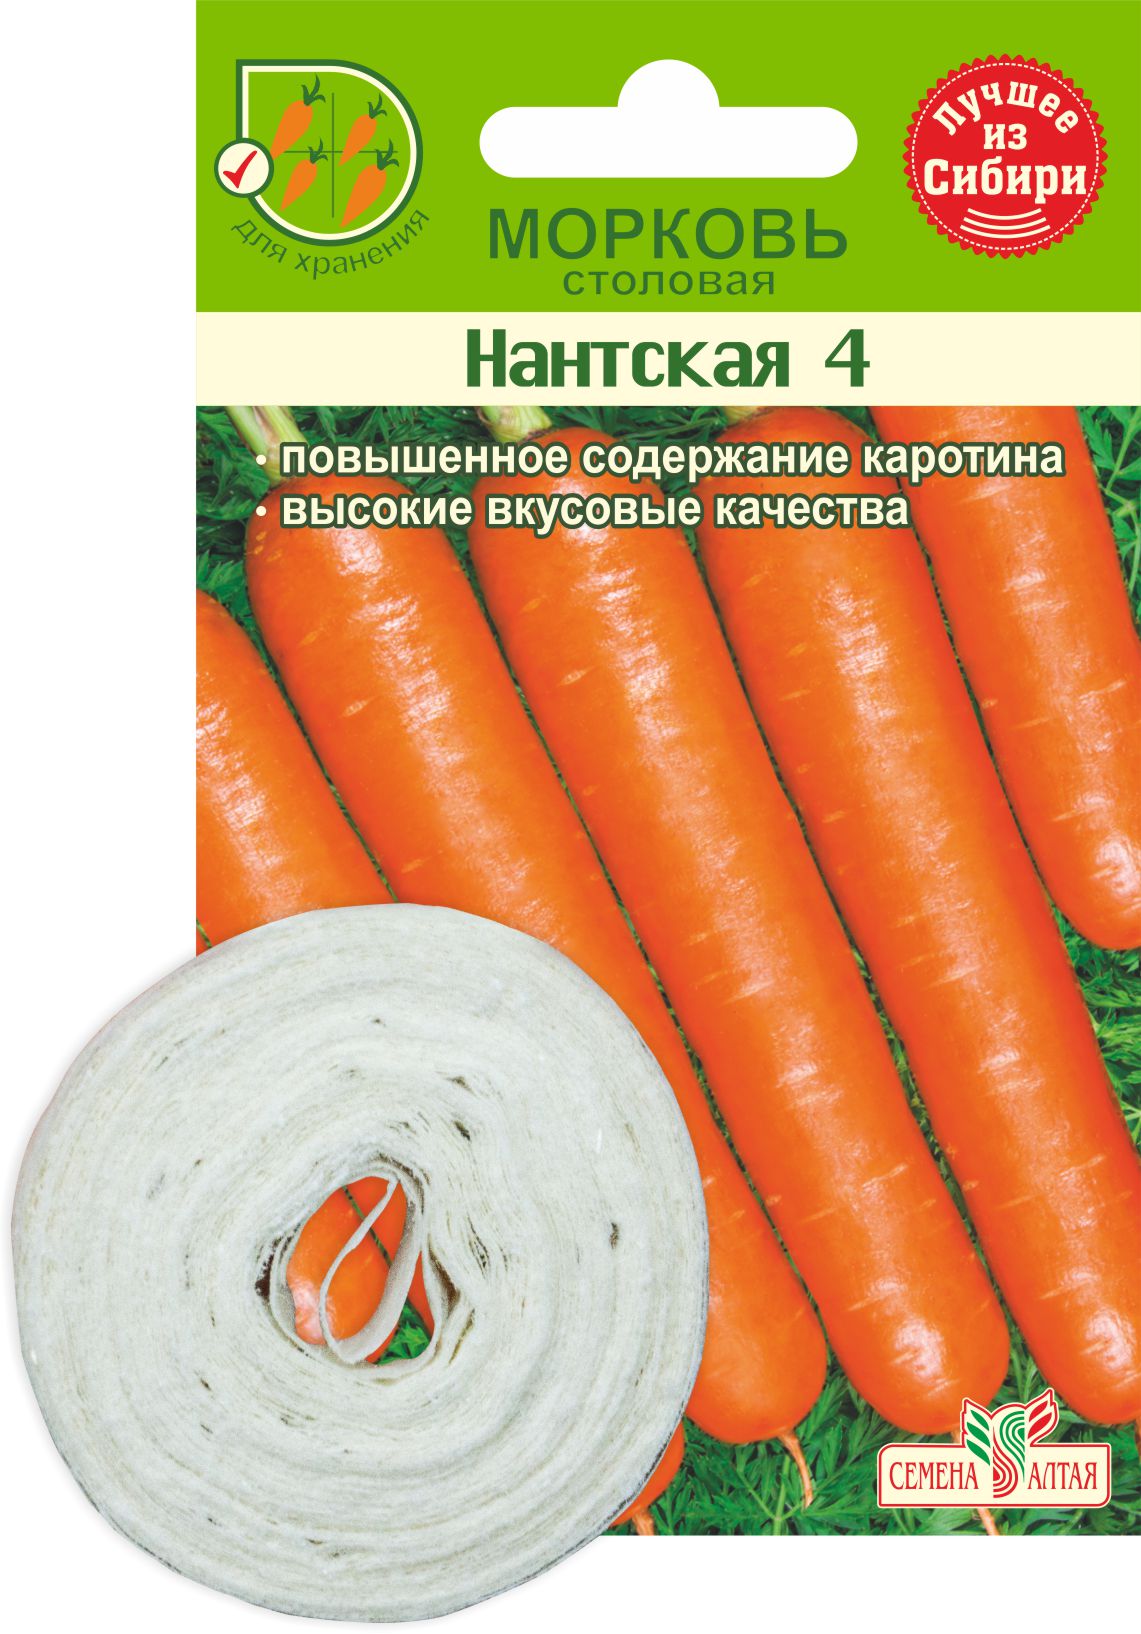 Морковь На Ленте Нантская Семена Алтая